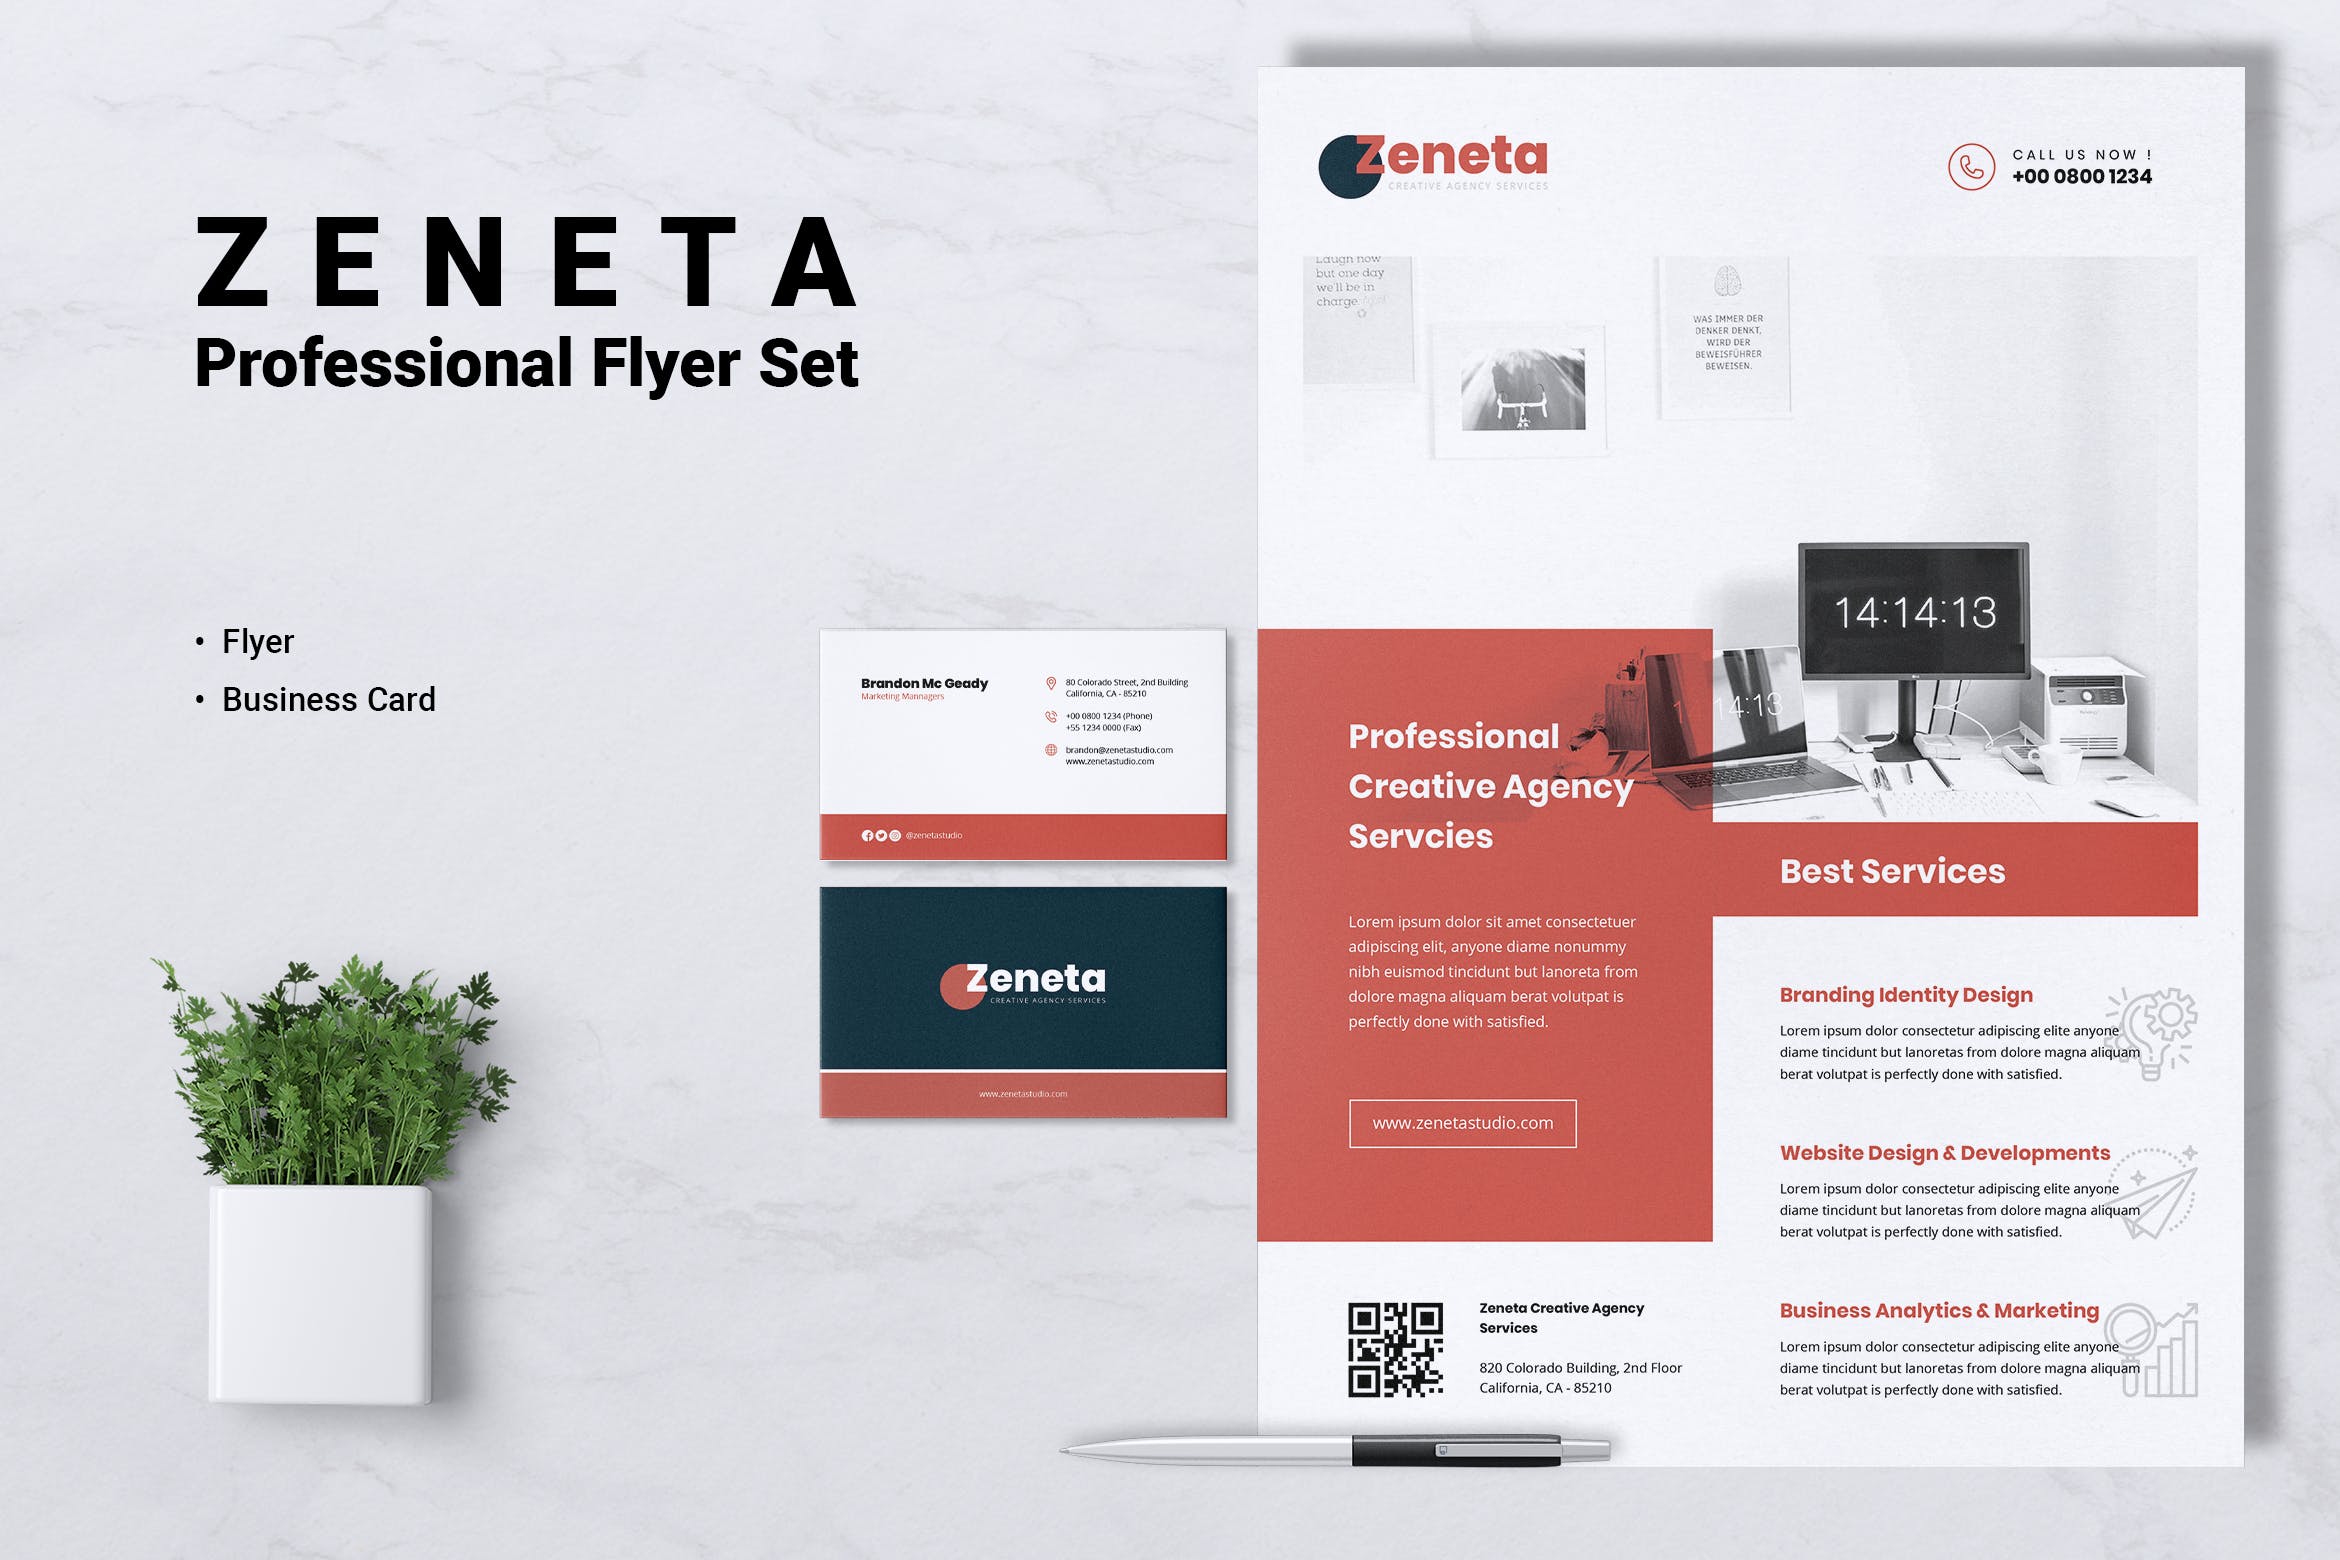 创意代理公司宣传单&企业名片设计模板 ZENETA Creative Agency Flyer & Business Card插图